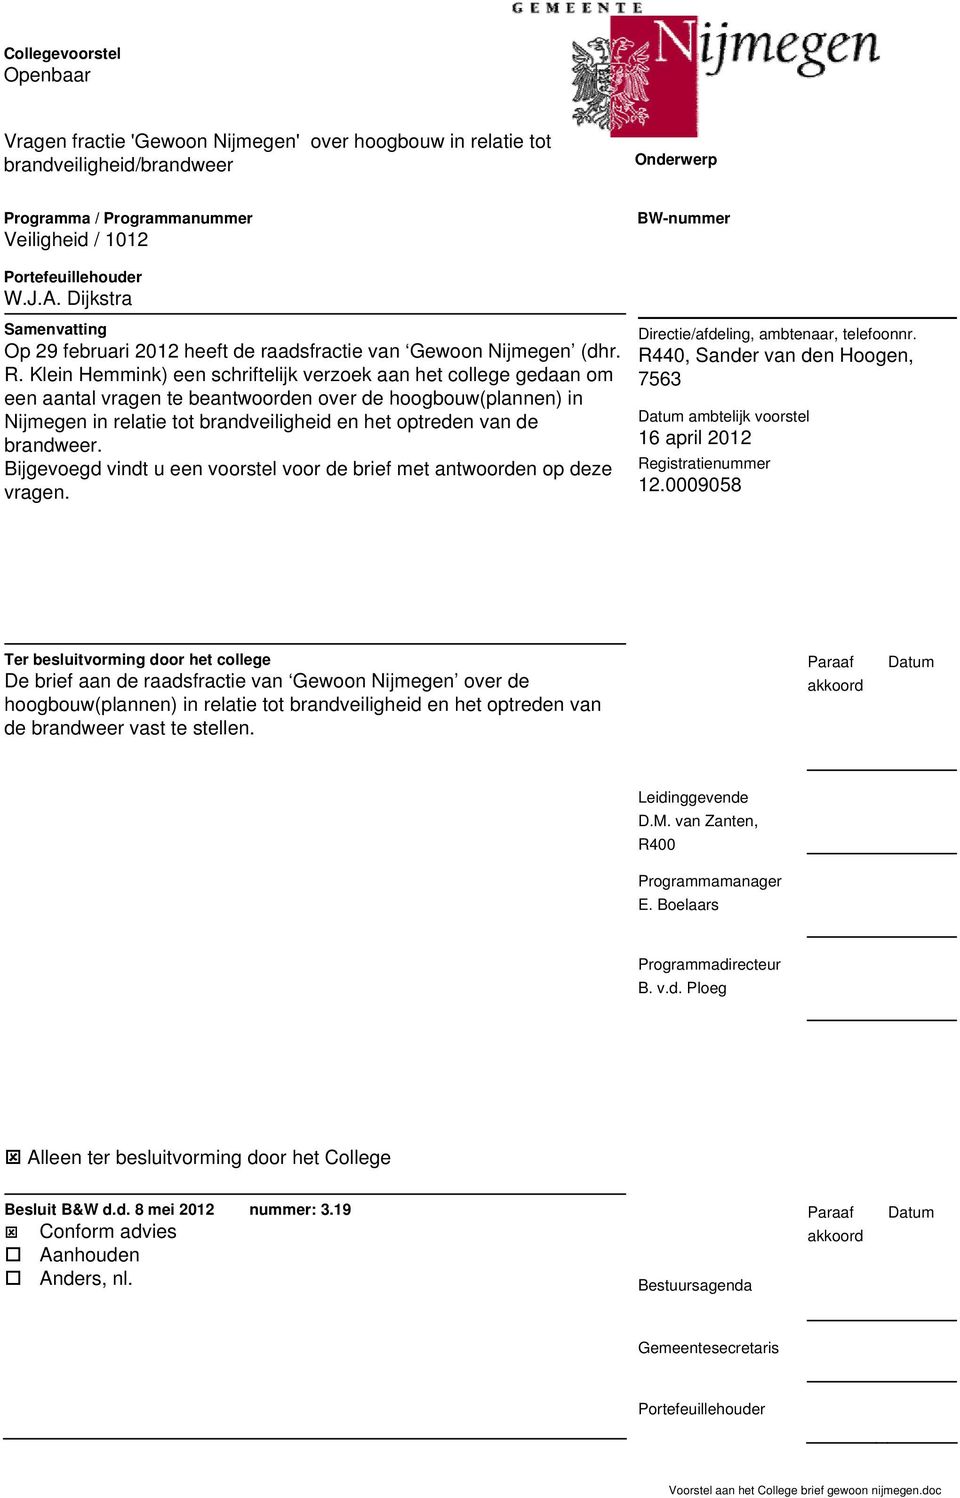 Klein Hemmink) een schriftelijk verzoek aan het college gedaan om een aantal vragen te beantwoorden over de hoogbouw(plannen) in Nijmegen in relatie tot brandveiligheid en het optreden van de